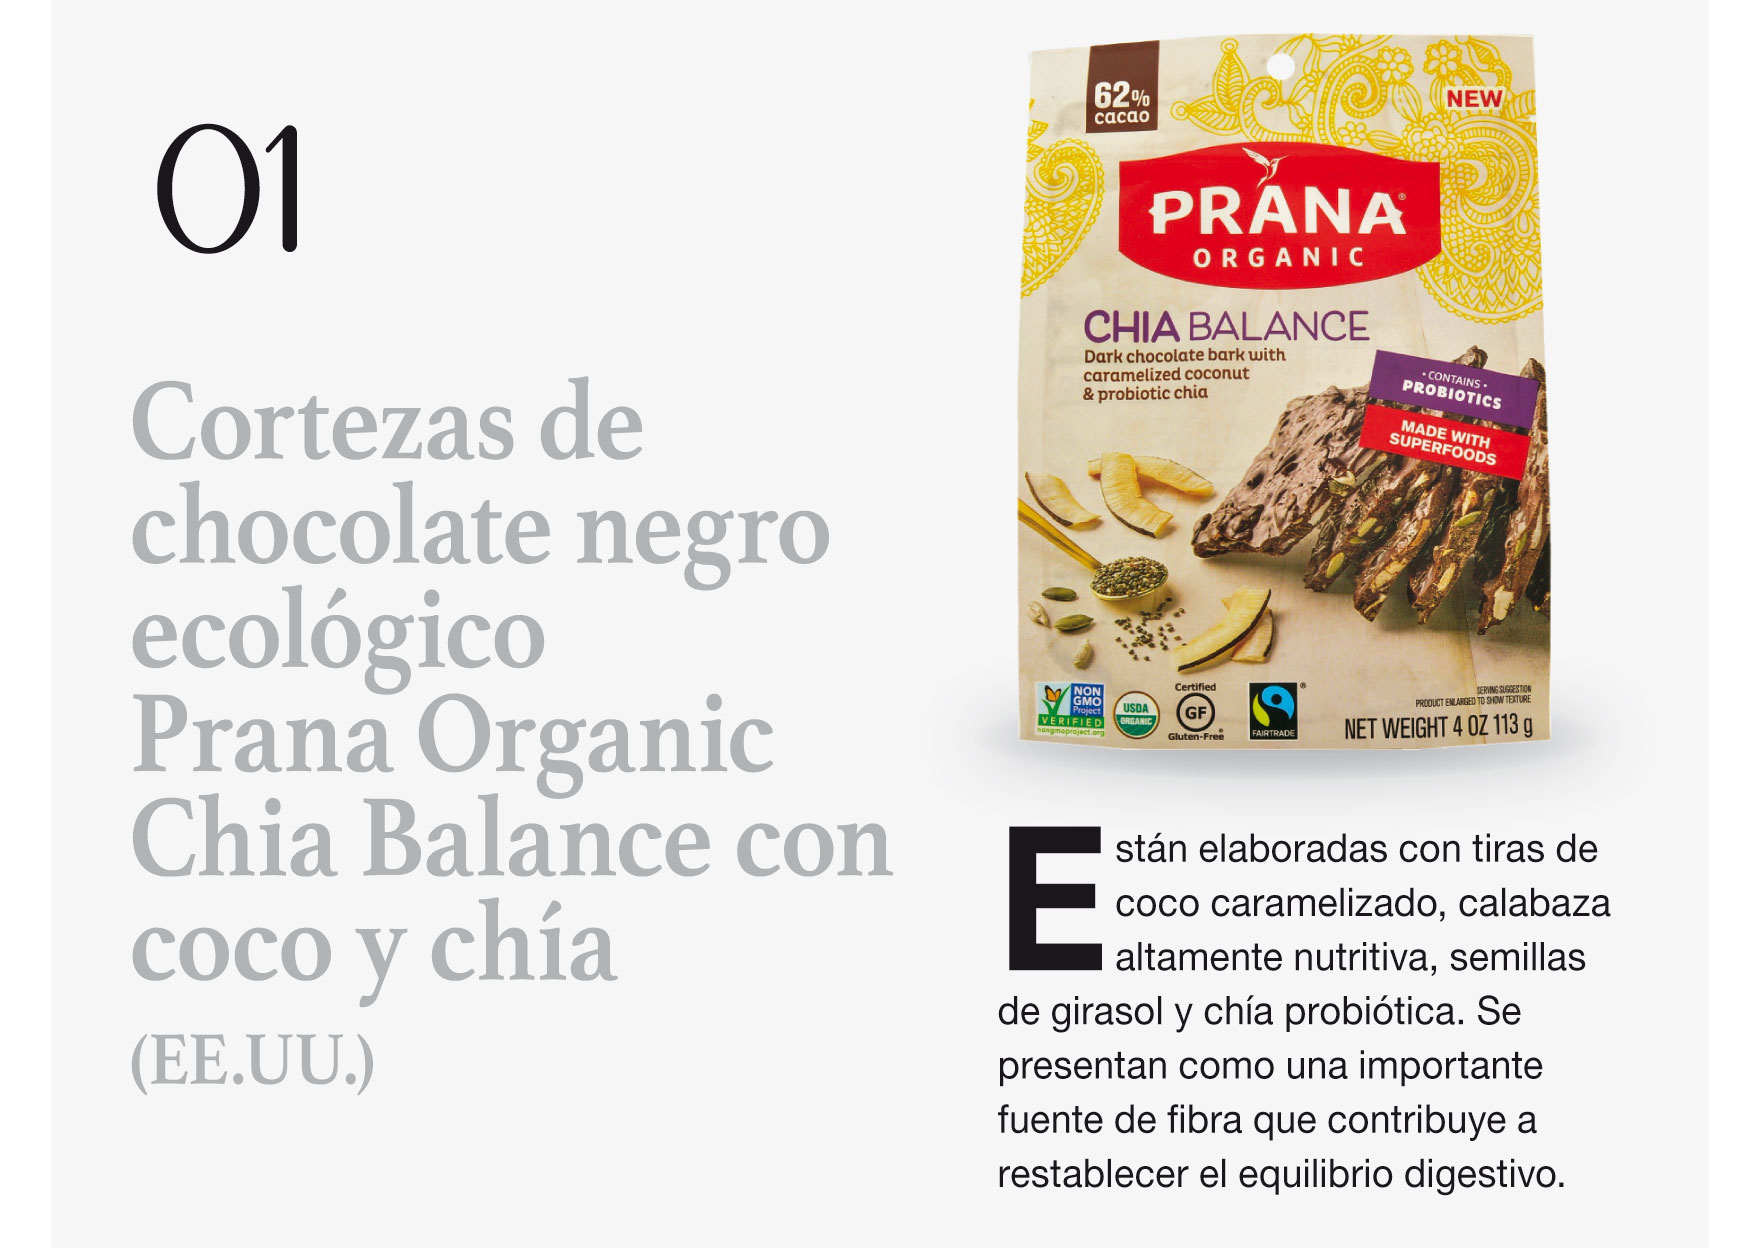 Cortezas de chocolate negro ecológico Prana Organic Chia Balance con coco y chía (EE.UU.)